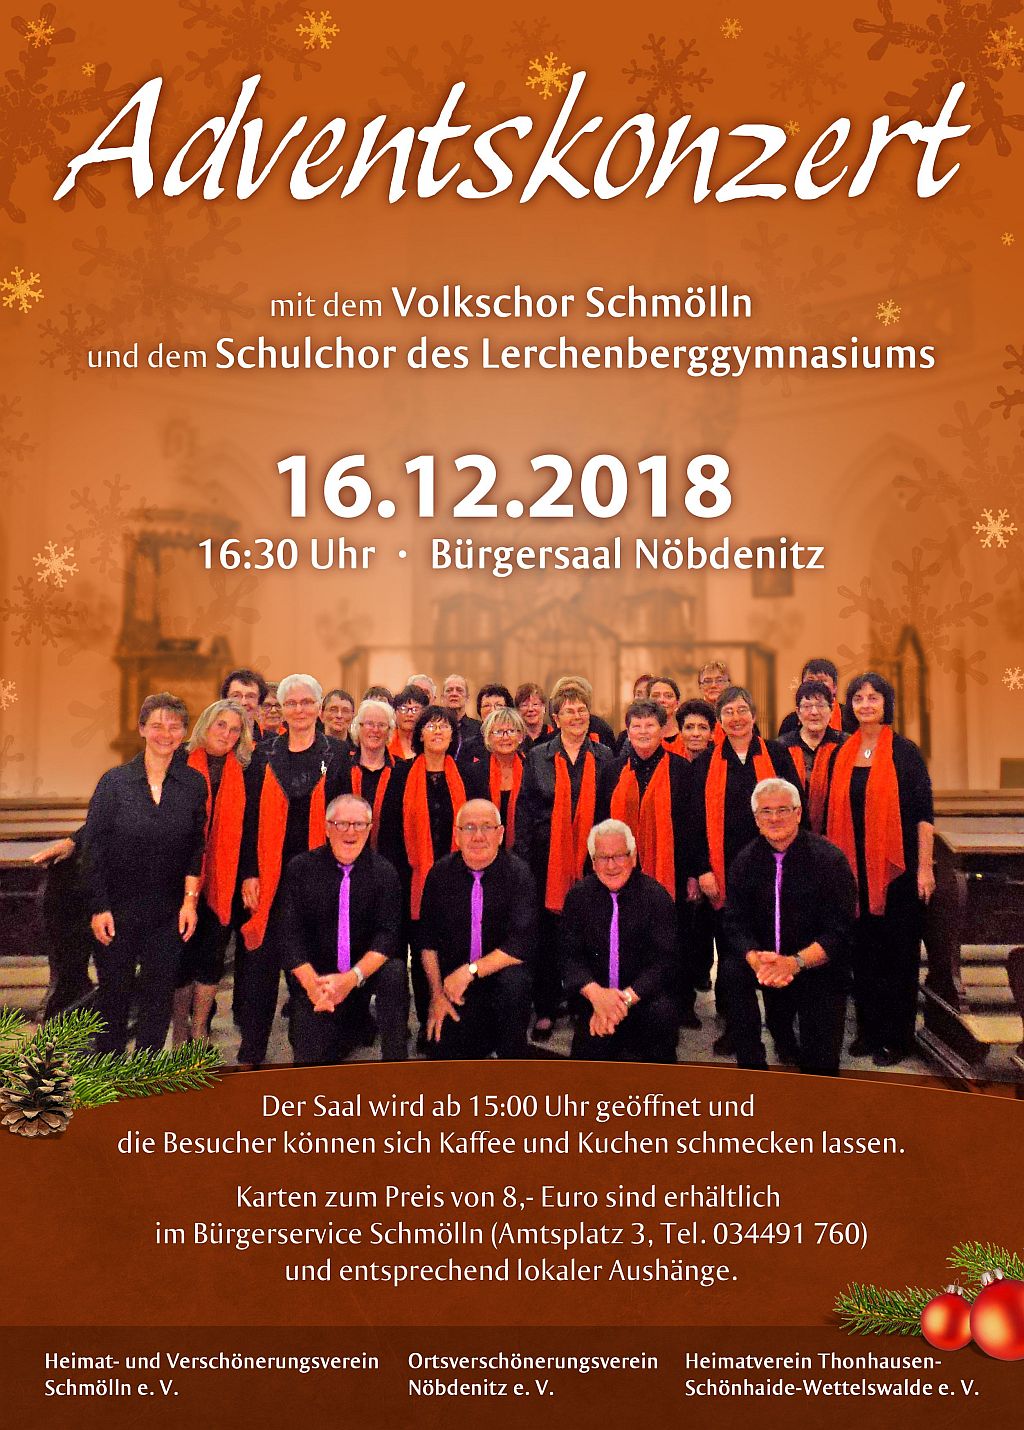 16. Dezember 2018 - Adventskonzert im Bürgerhaus Nöbdenitz